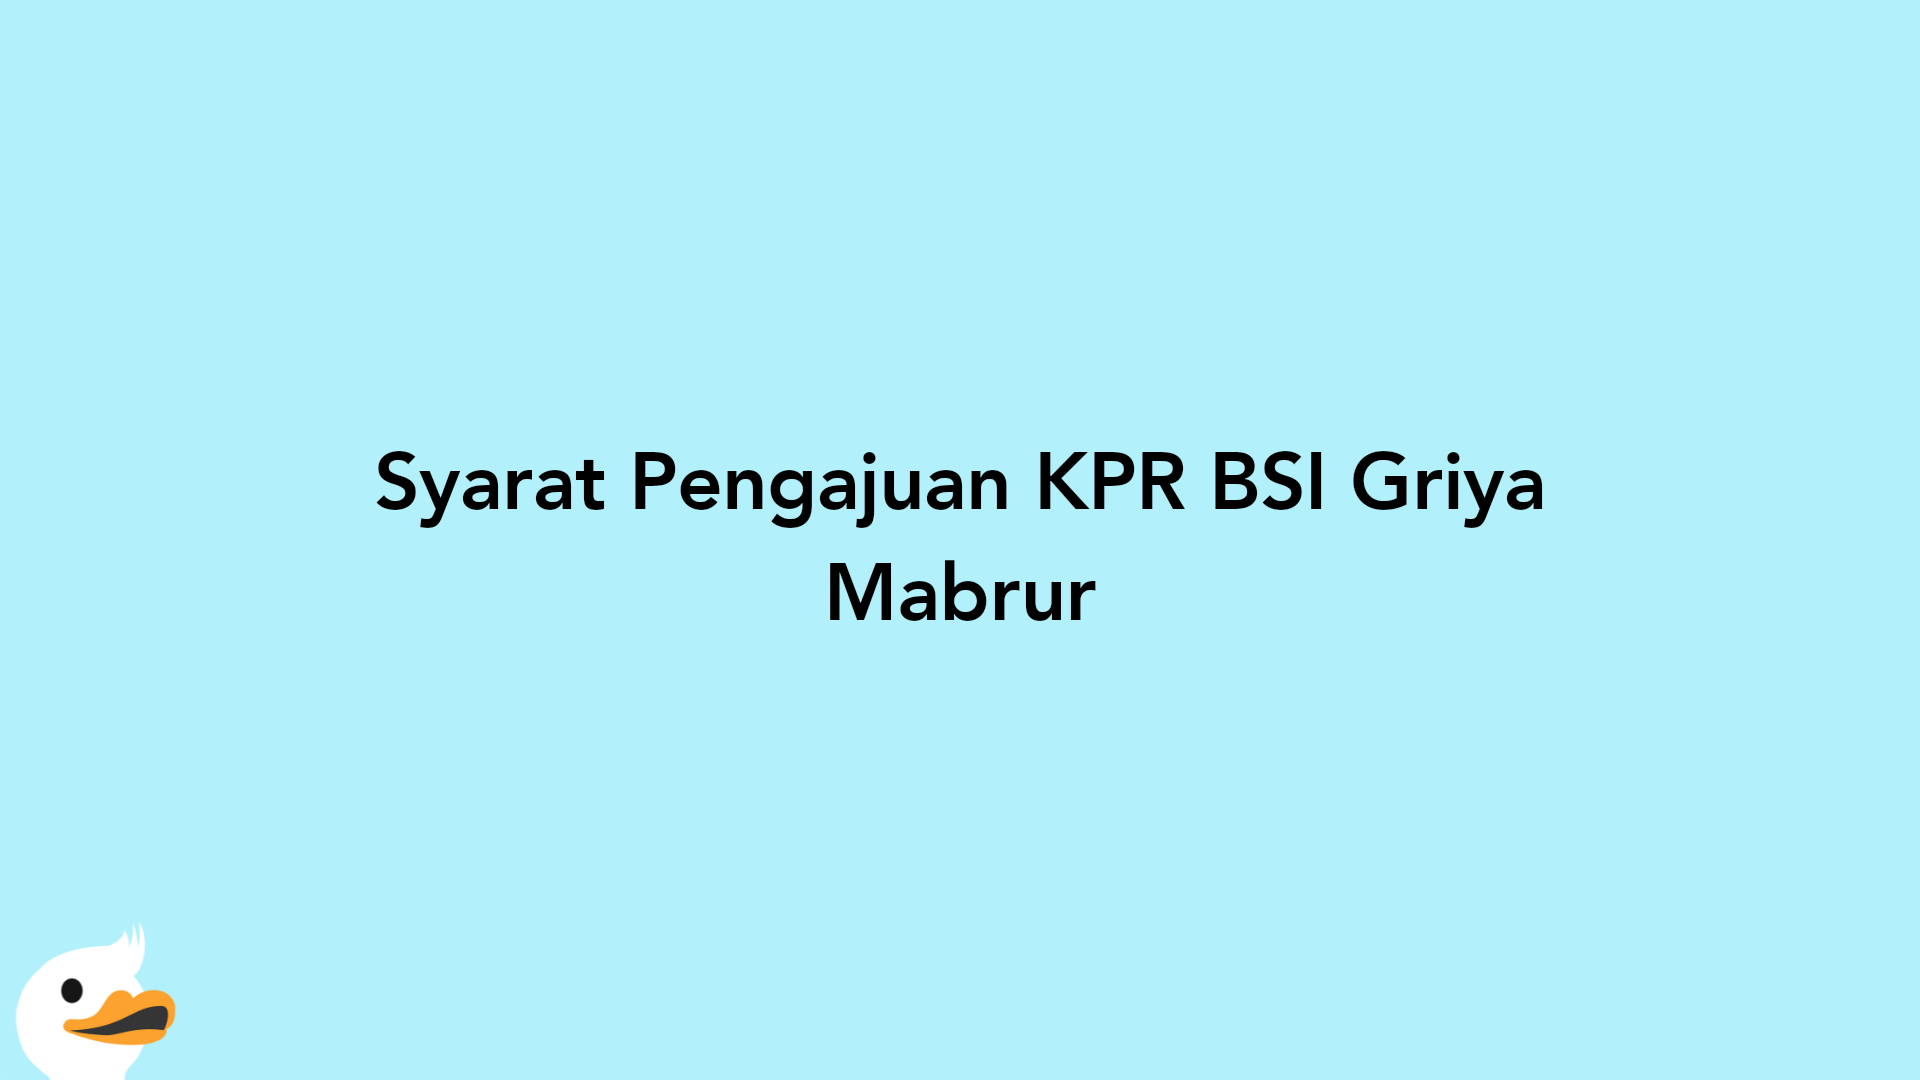 Syarat Pengajuan KPR BSI Griya Mabrur